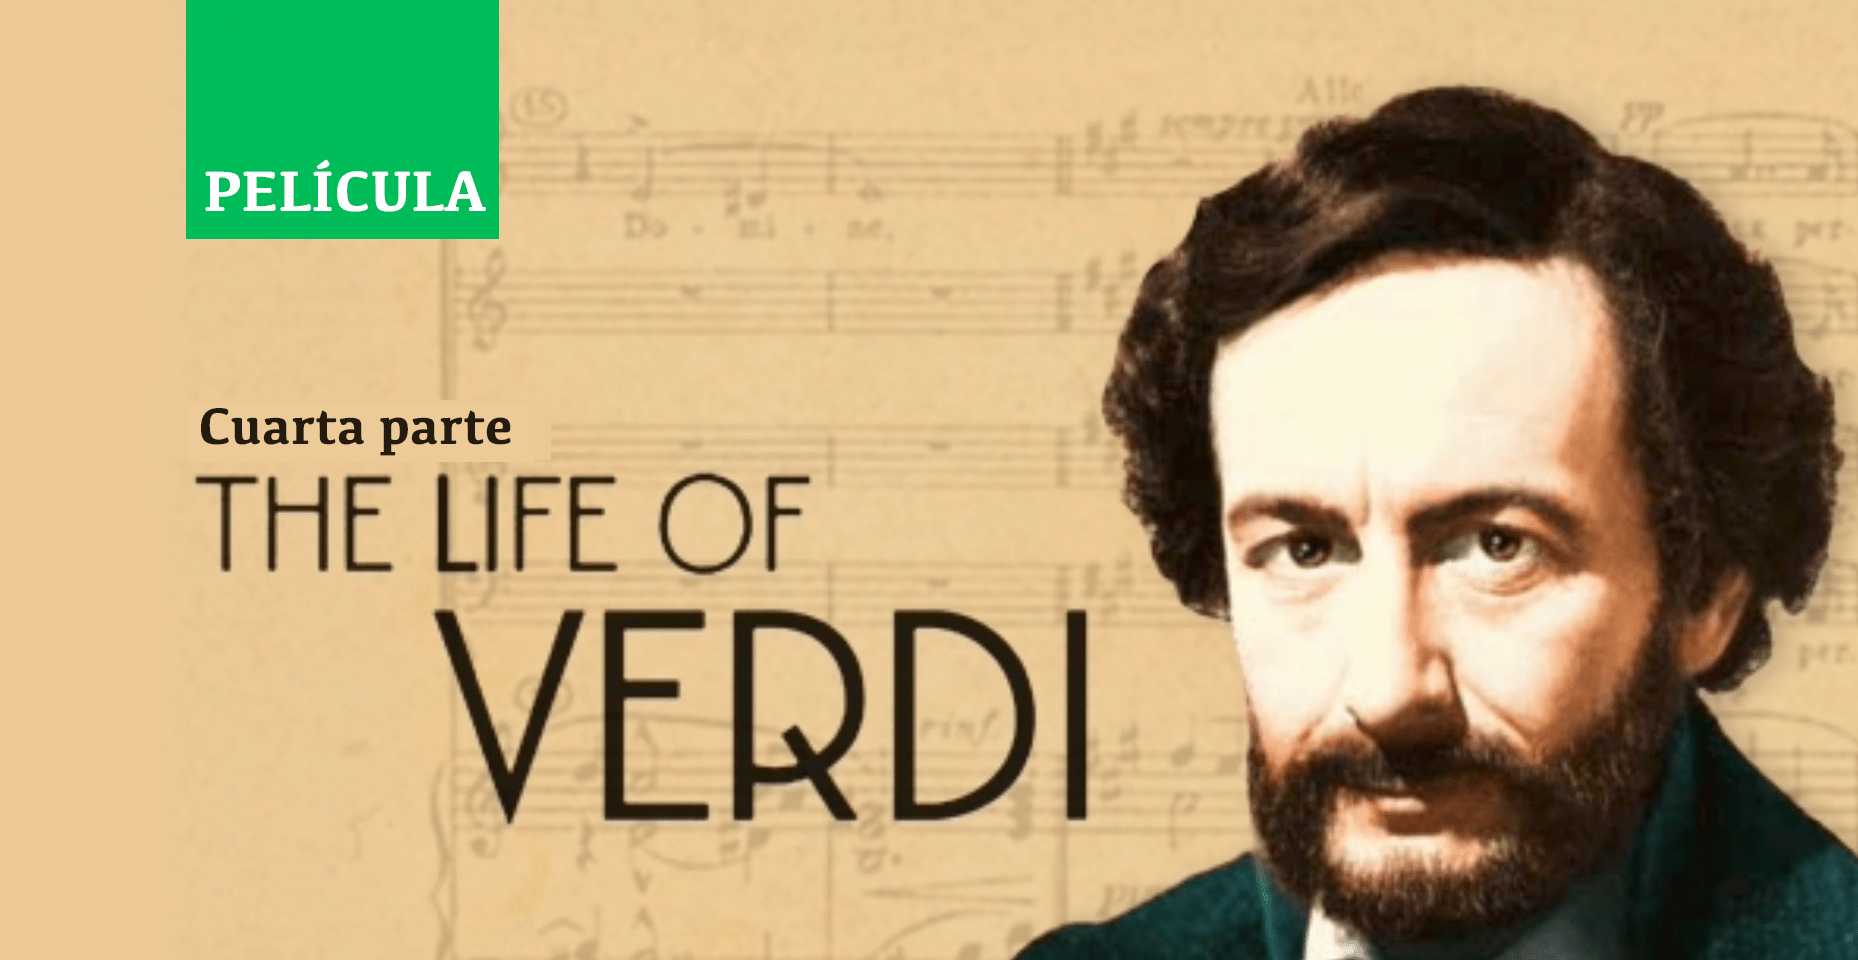 La vida de Verdi 4